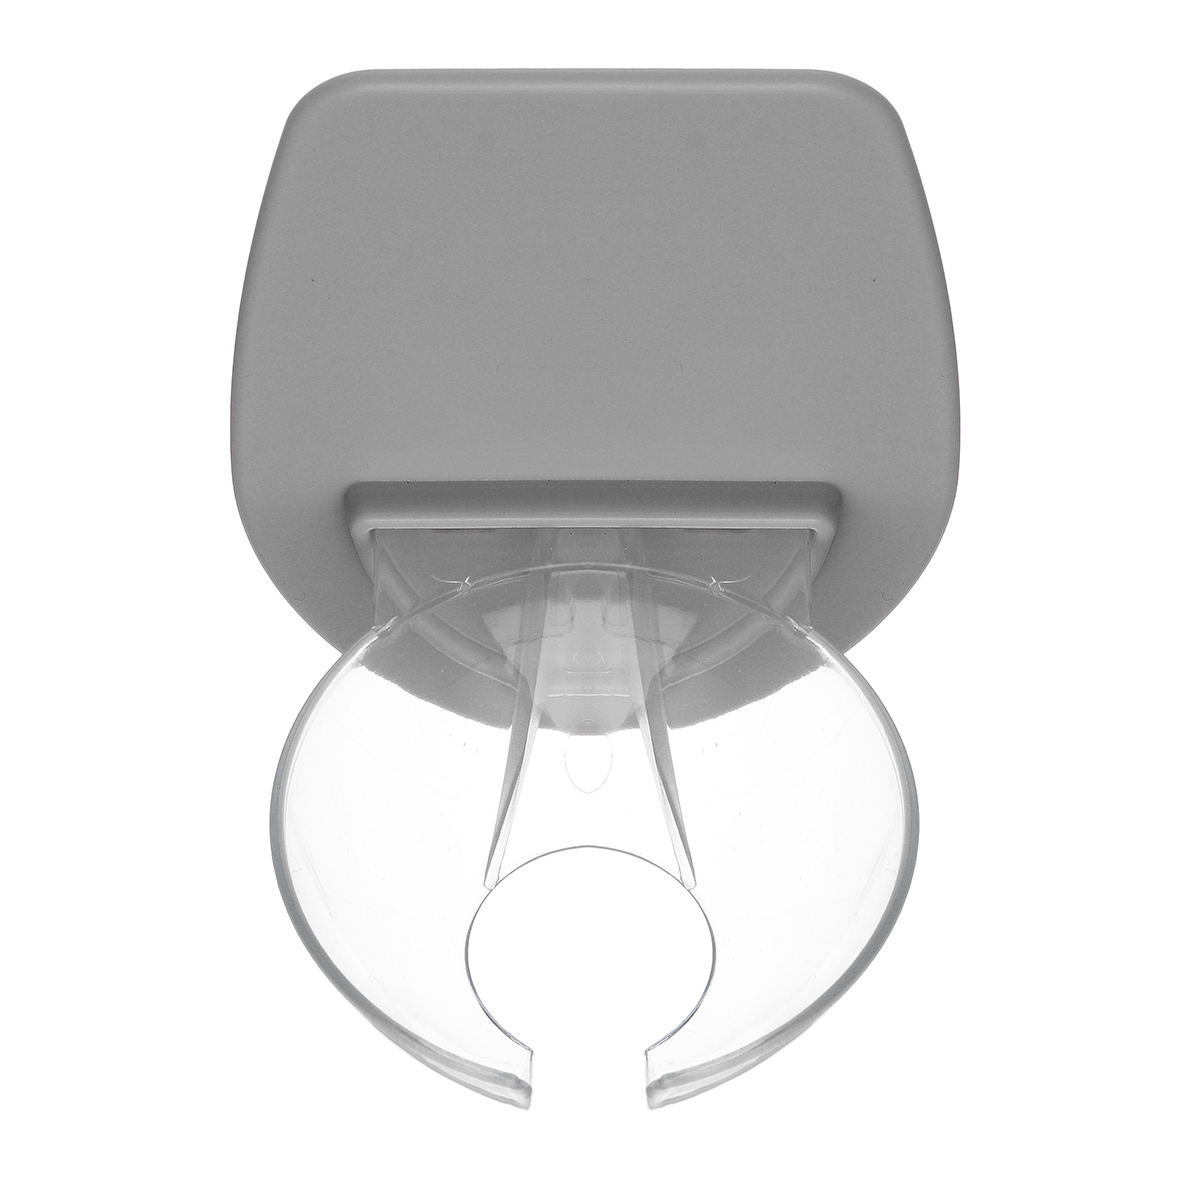 HONANA-Water-Cup-Holder-Drinking-Glasses-Wall-Sticker-Storage-Kitchen-Storage-Rack-1432314-9